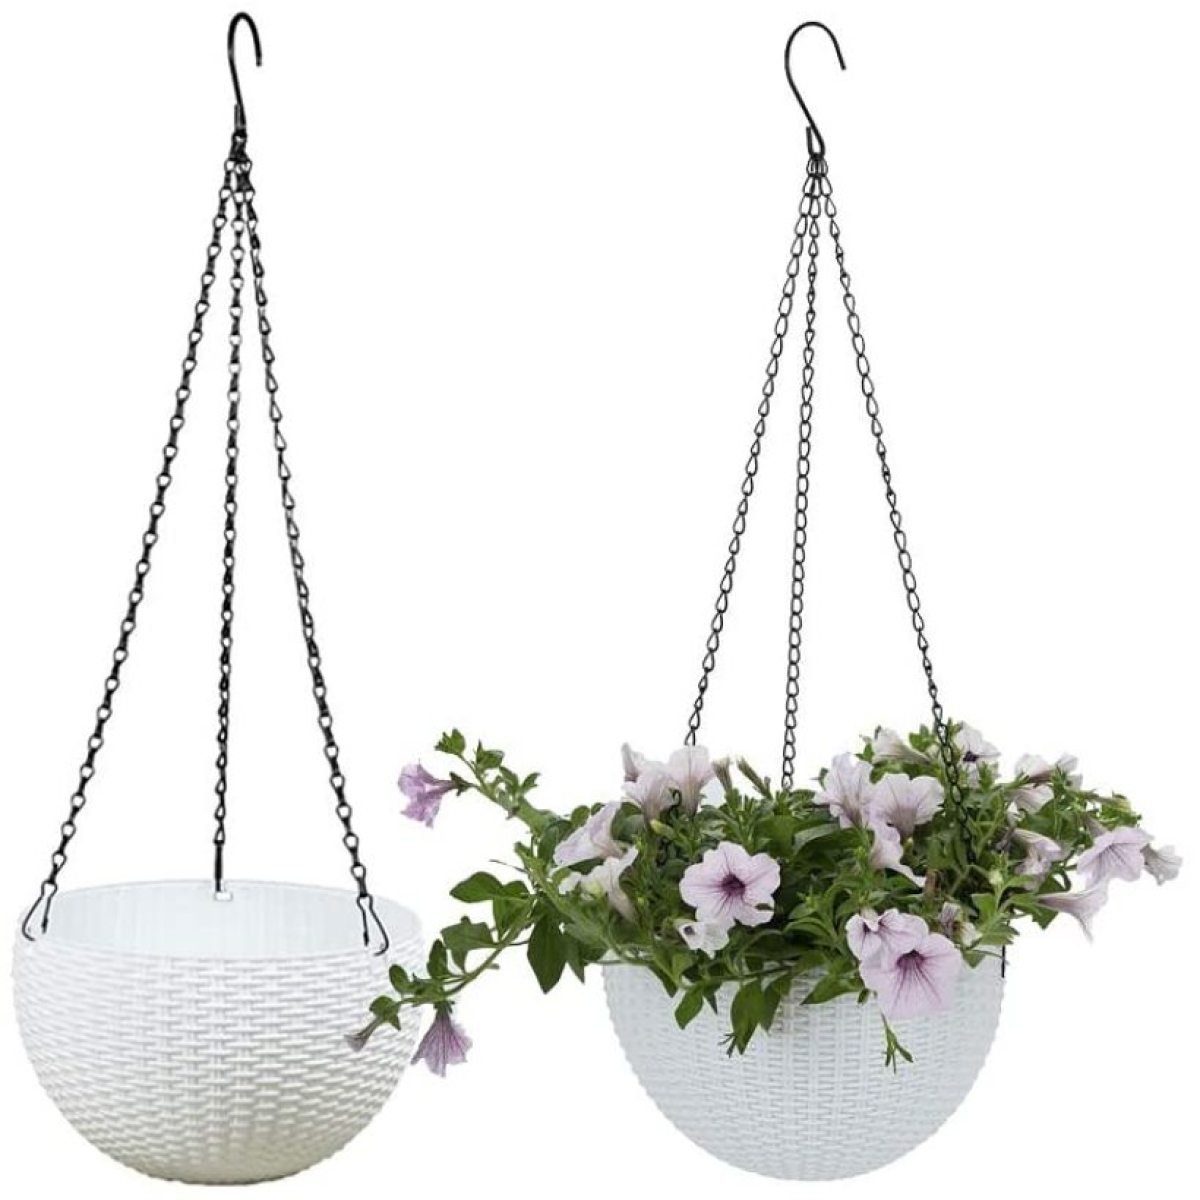 Blumentöpfe,für Jormftte Balkon,Rattan Weiß Hängekorb dem 2 Gärten hängende Körbe Aufhängen